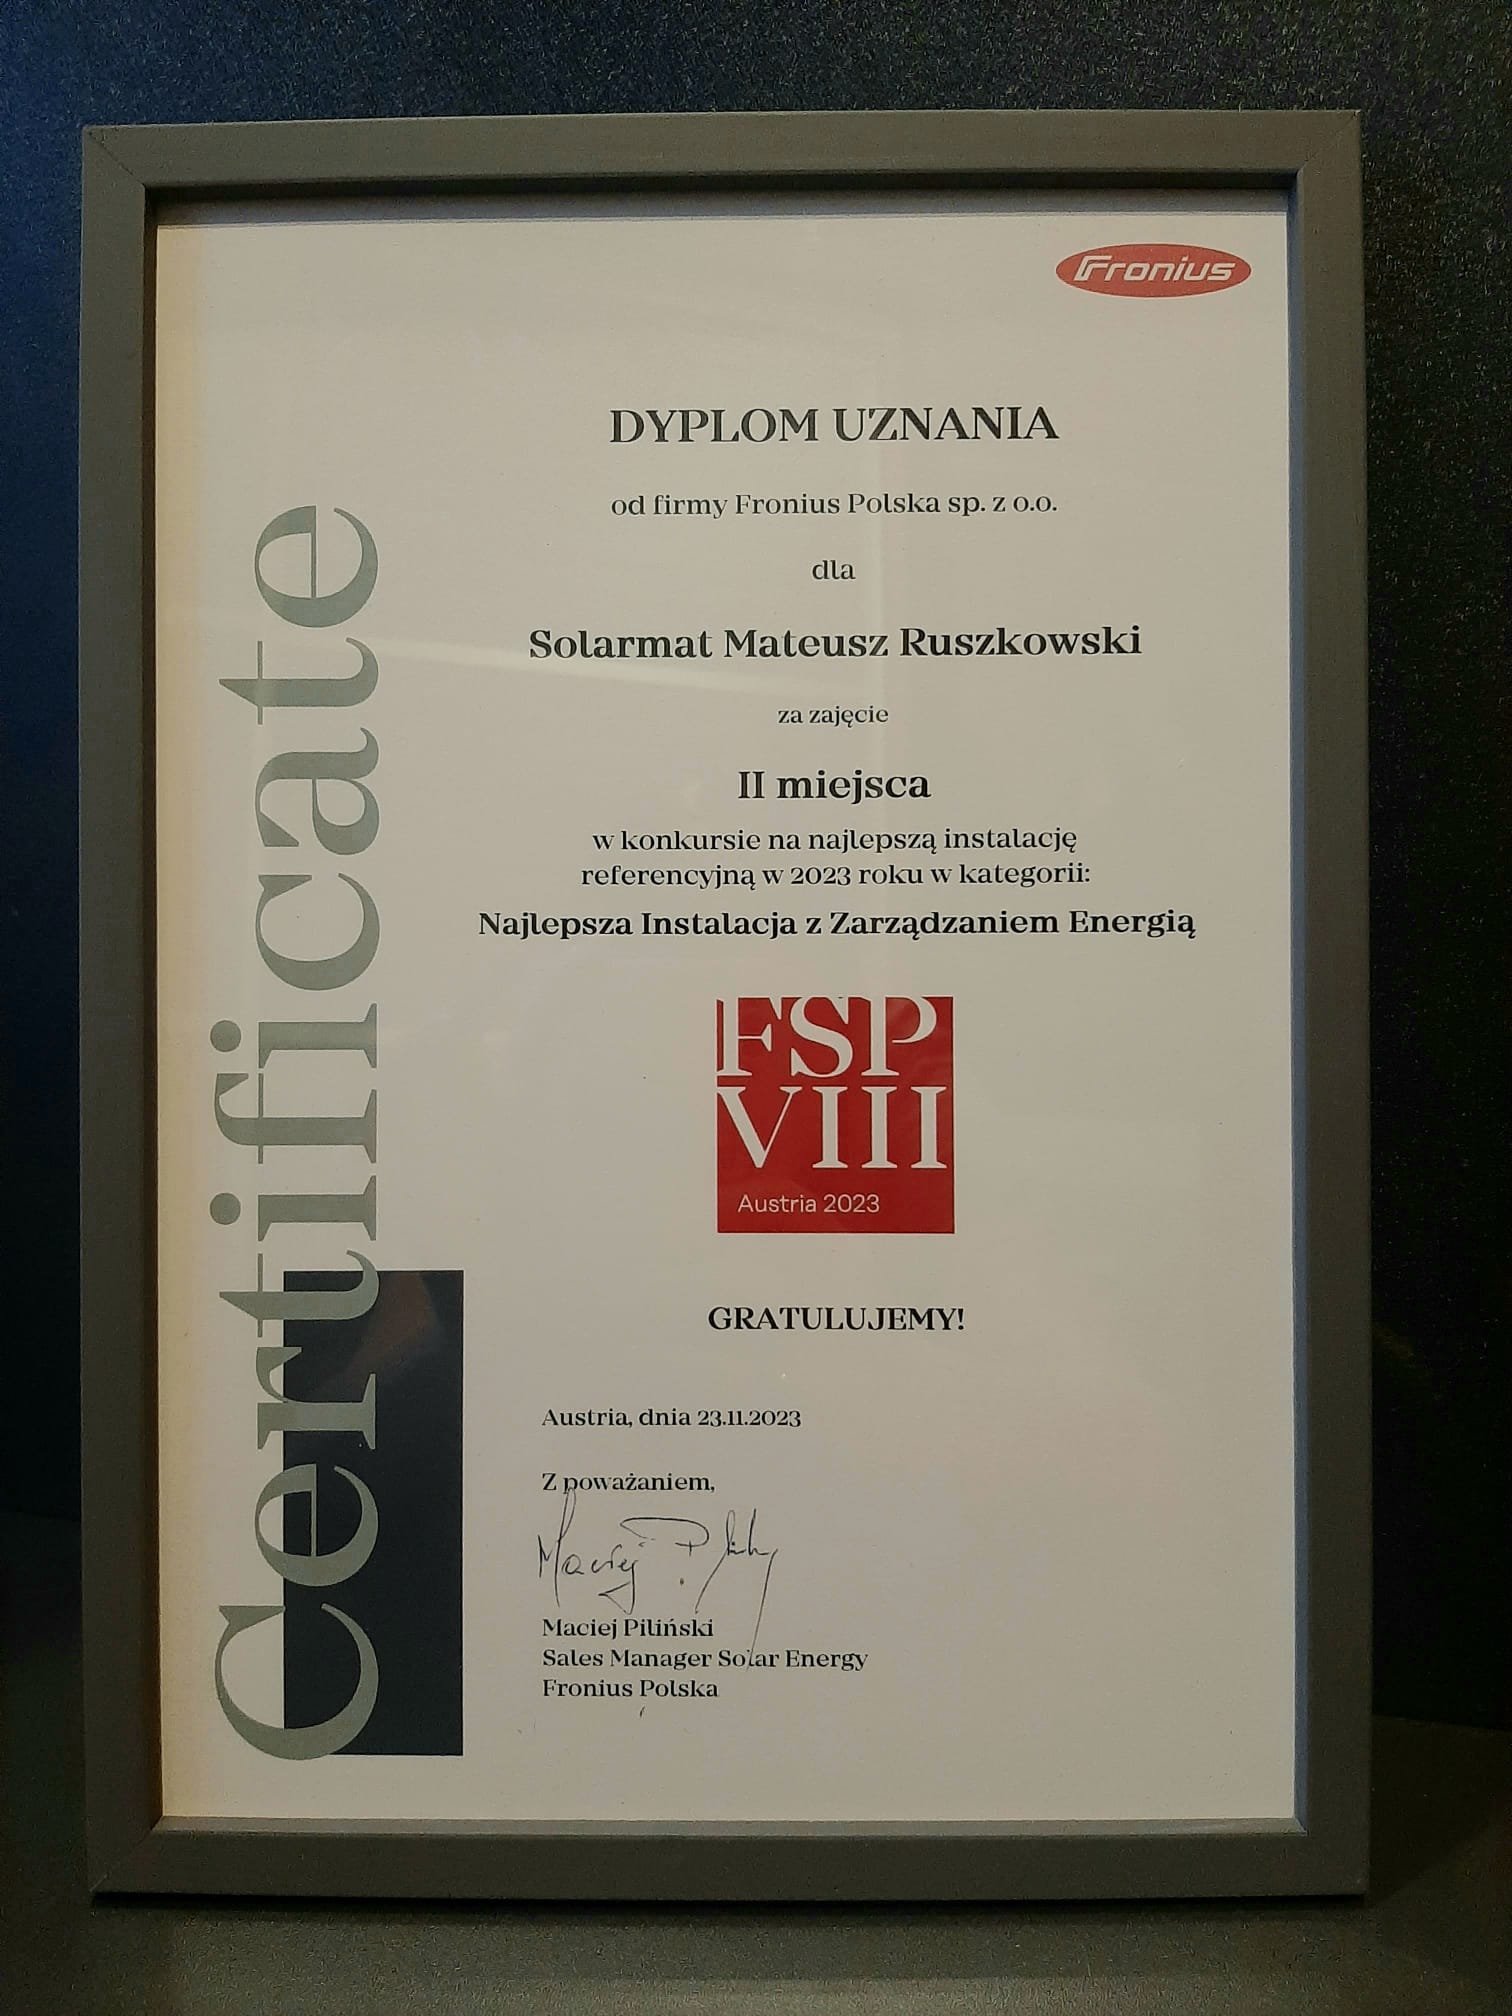 Dyplom uznania od firmy Fornius Polska sp. z o.o. dla Solarmat Mateusz Ruszkowski